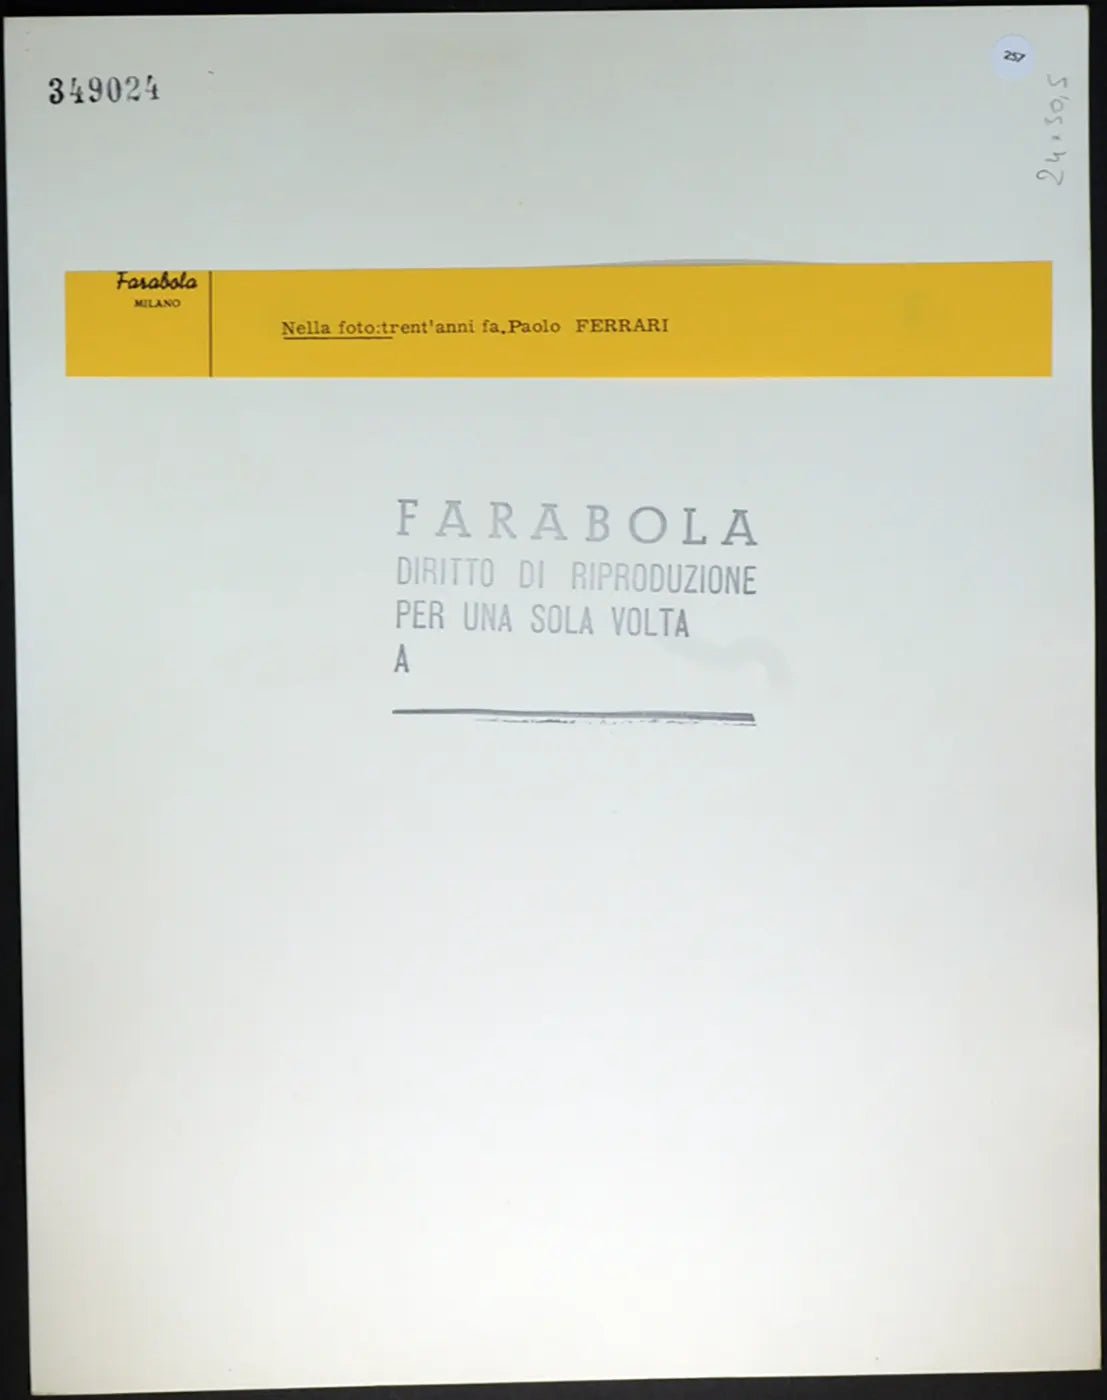 Paolo Ferrari anni 40 Ft 257 - Stampa 30x24 cm - Farabola Stampa ai sali d'argento